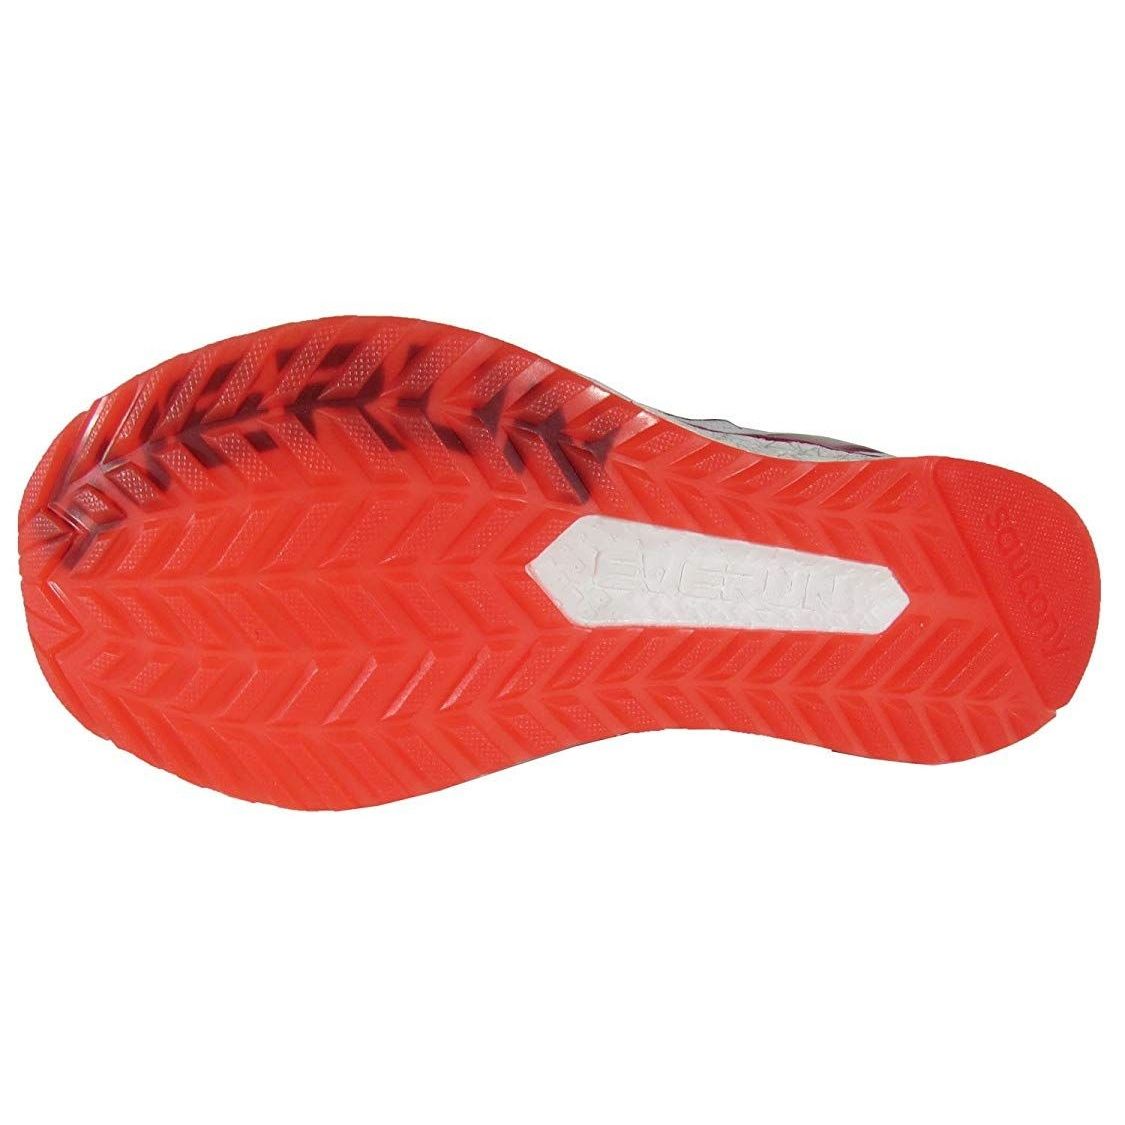 کفش مخصوص دویدن زنانه ساکنی مدل Freedom Iso کد S10355-5 -  - 5